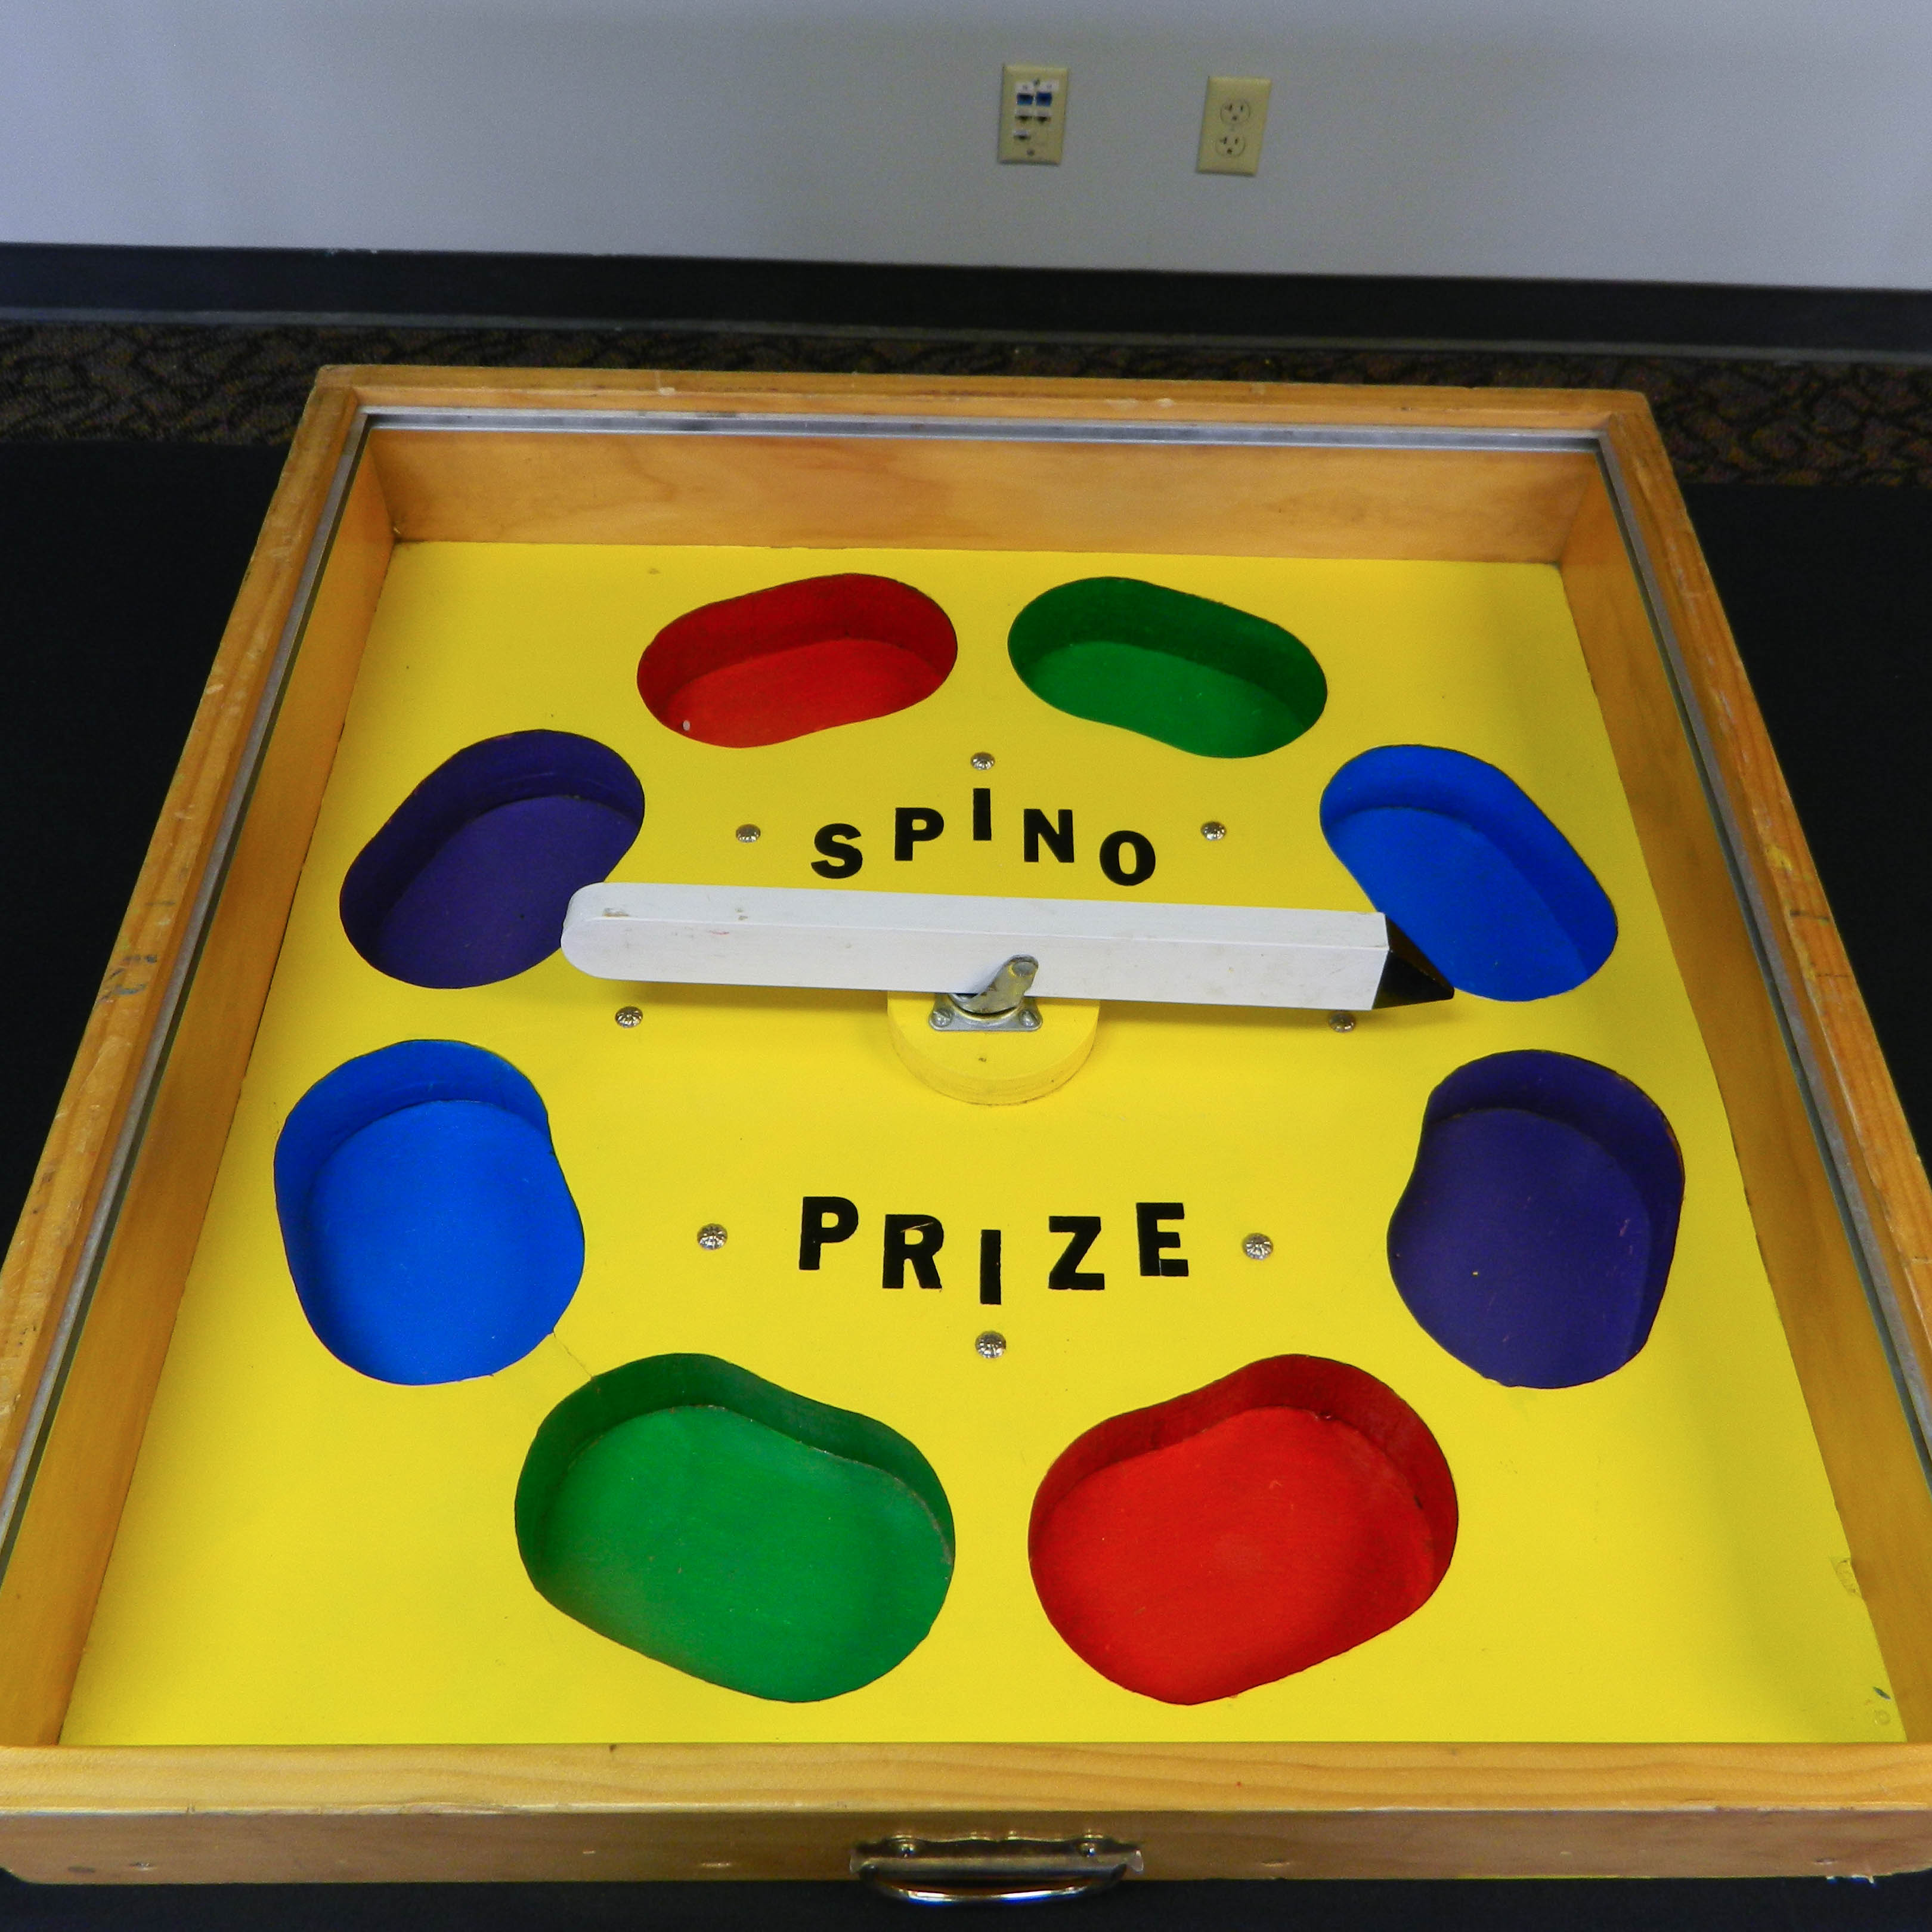 spin-o-prize